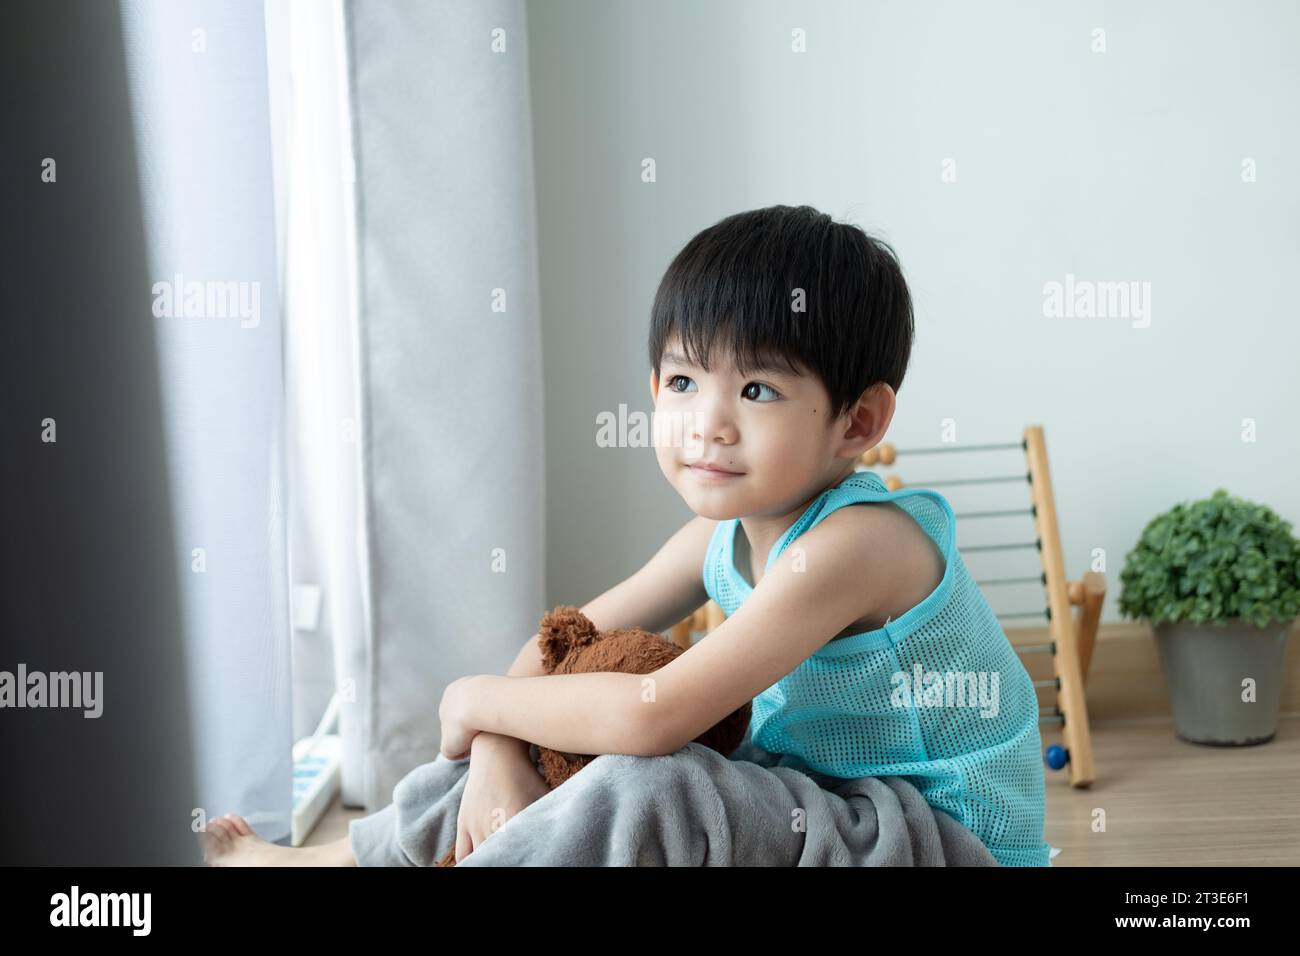 Garçon asiatique triste s'assied la tête baissée et regarde par la porte sa poupée préférée. Banque D'Images